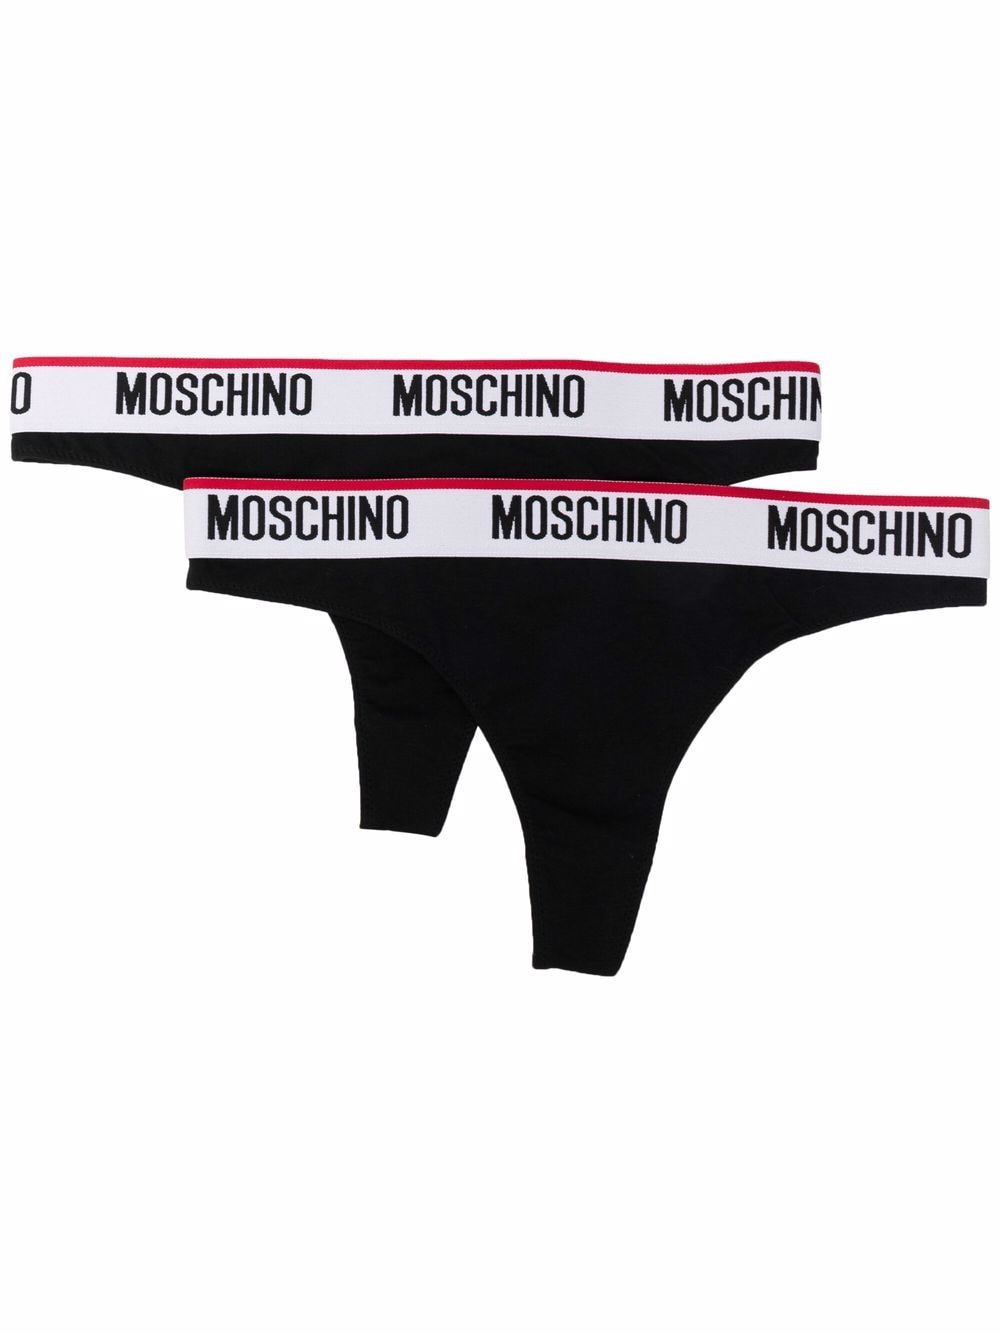 фото Moschino комплект из двух трусов-стрингов с логотипом